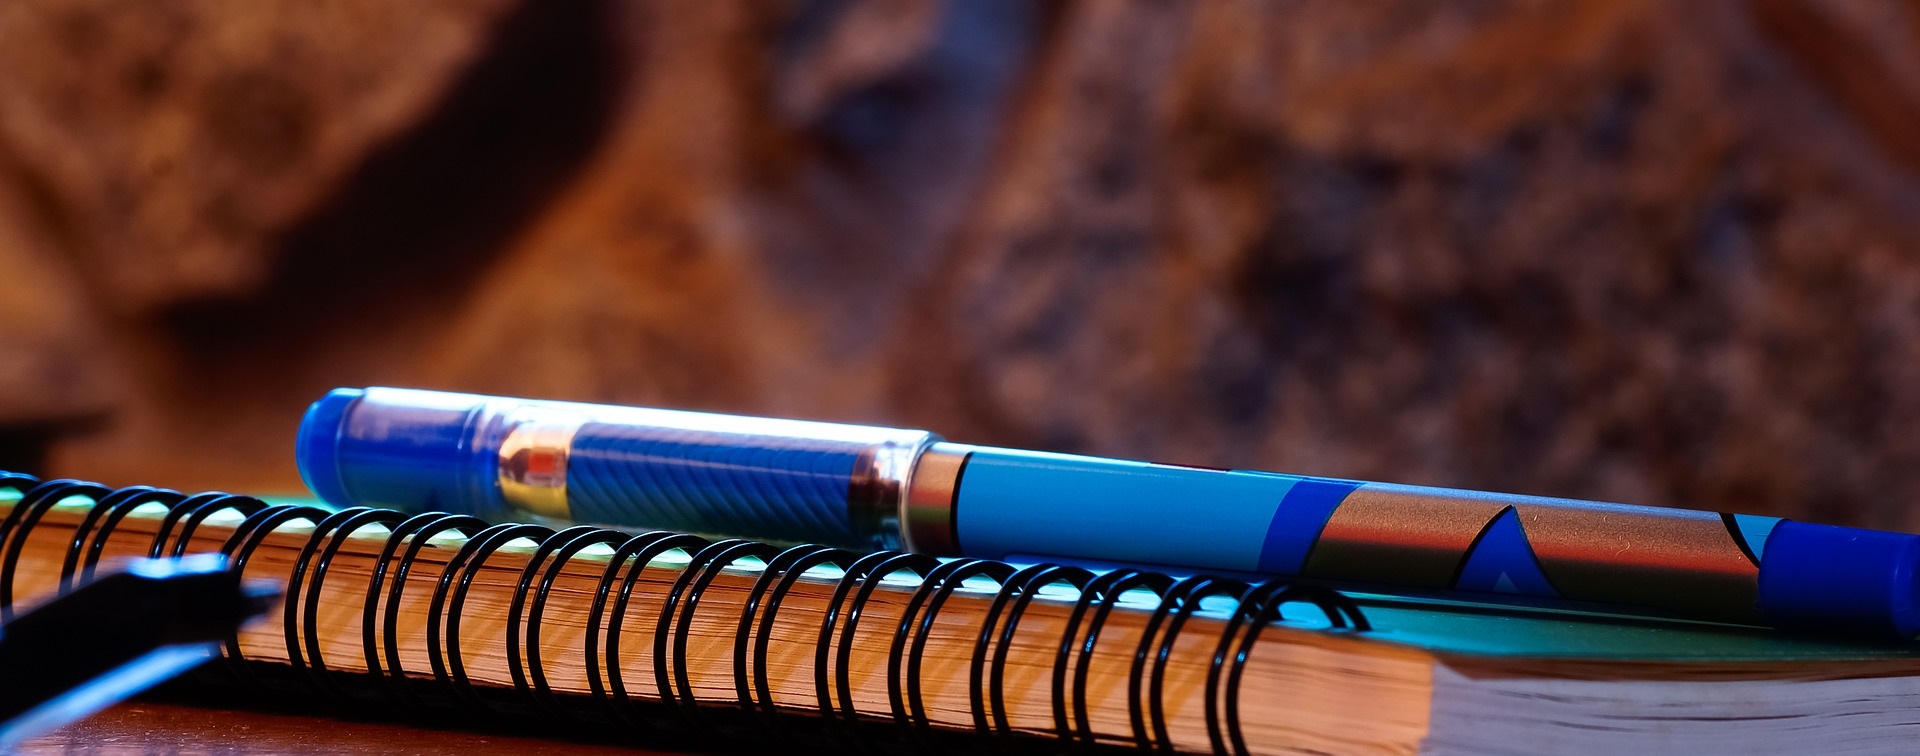 Blå penna på blå anteckningsbok.